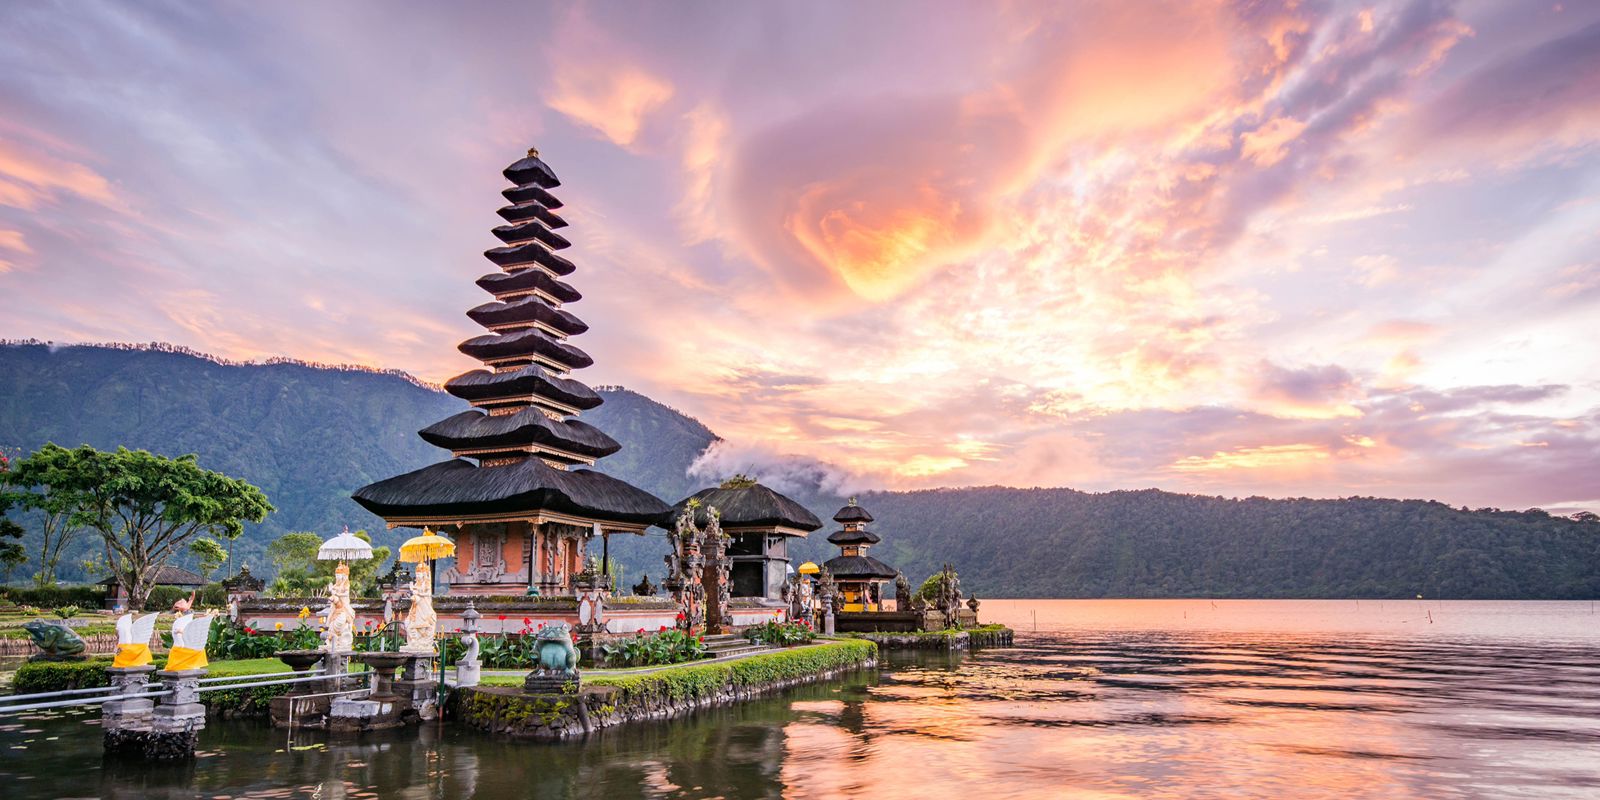 Liburan ke Bali? Jangan Lupa Mampir ke Desa Wisata Ini